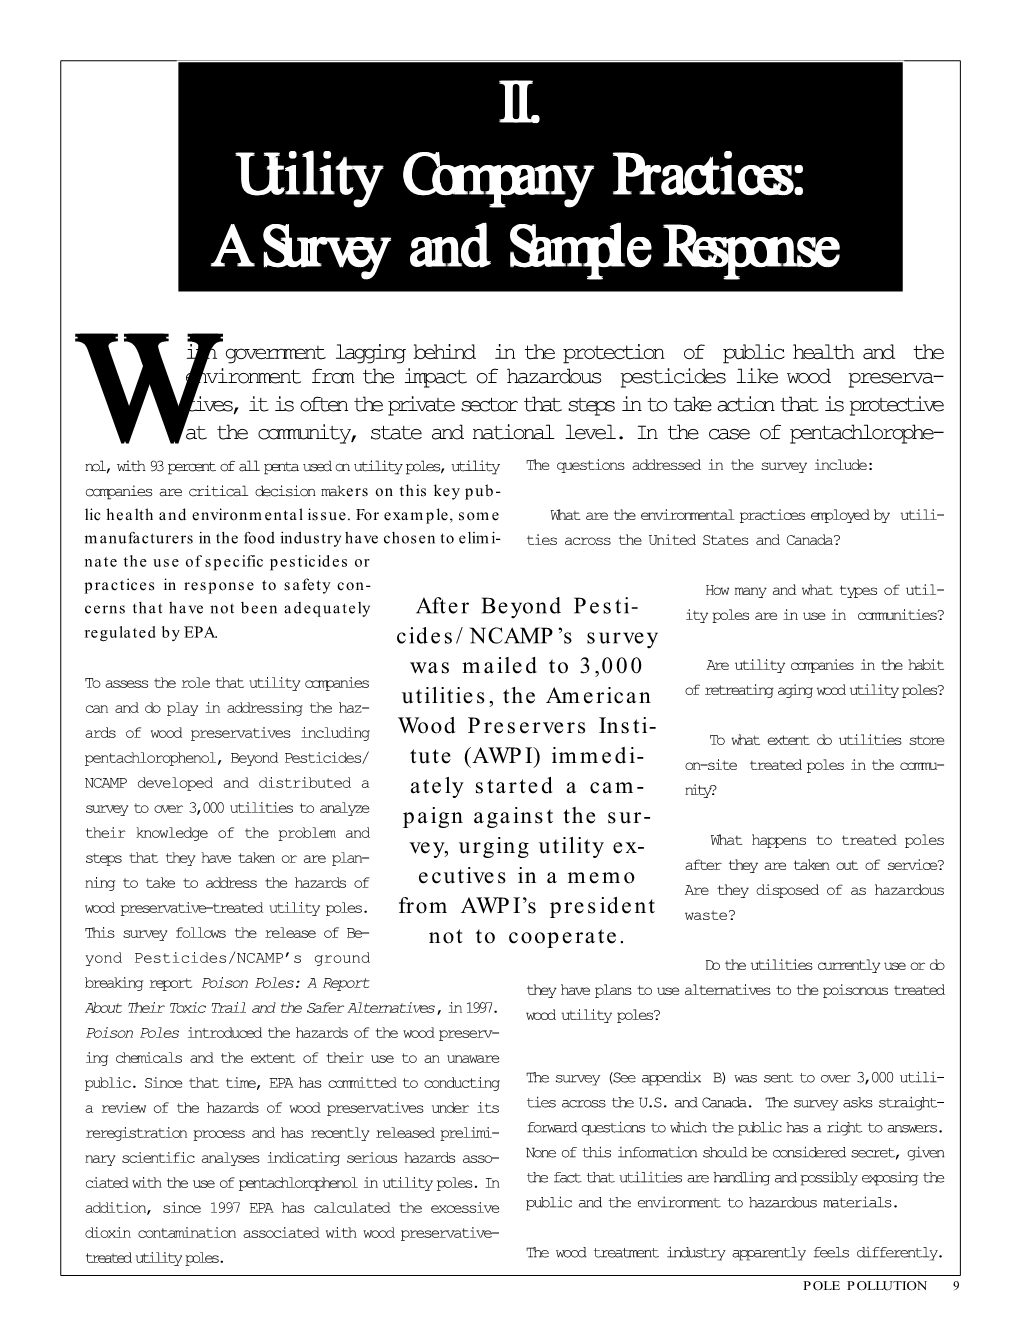 2. Utility Company Practices